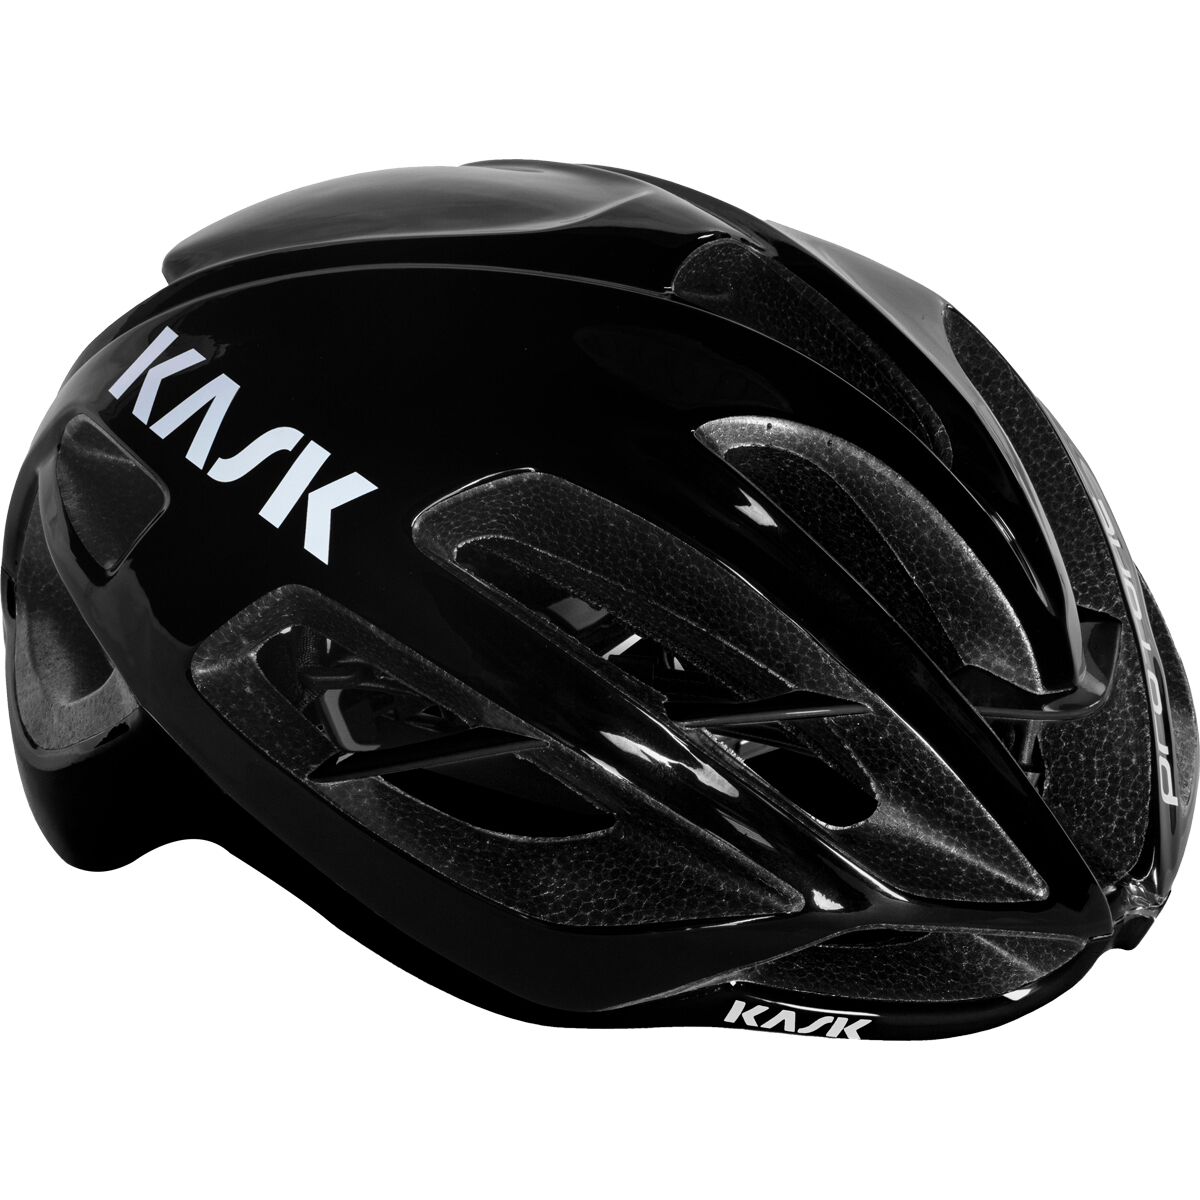 Protone Icon Helmet Bike